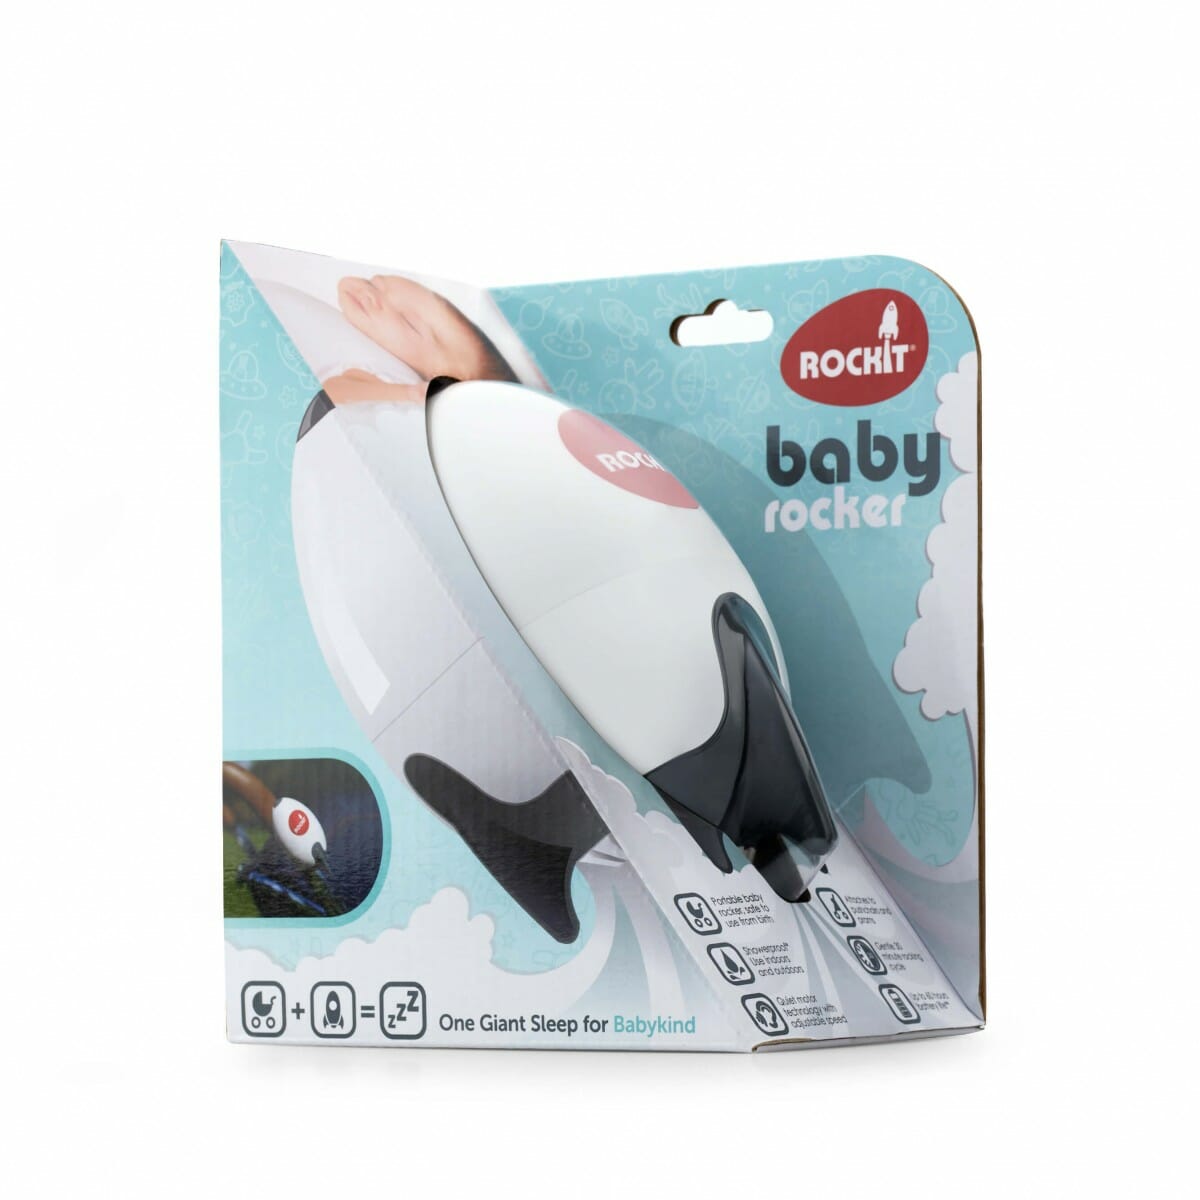 Rockit Portable Baby Rocker In Packaging